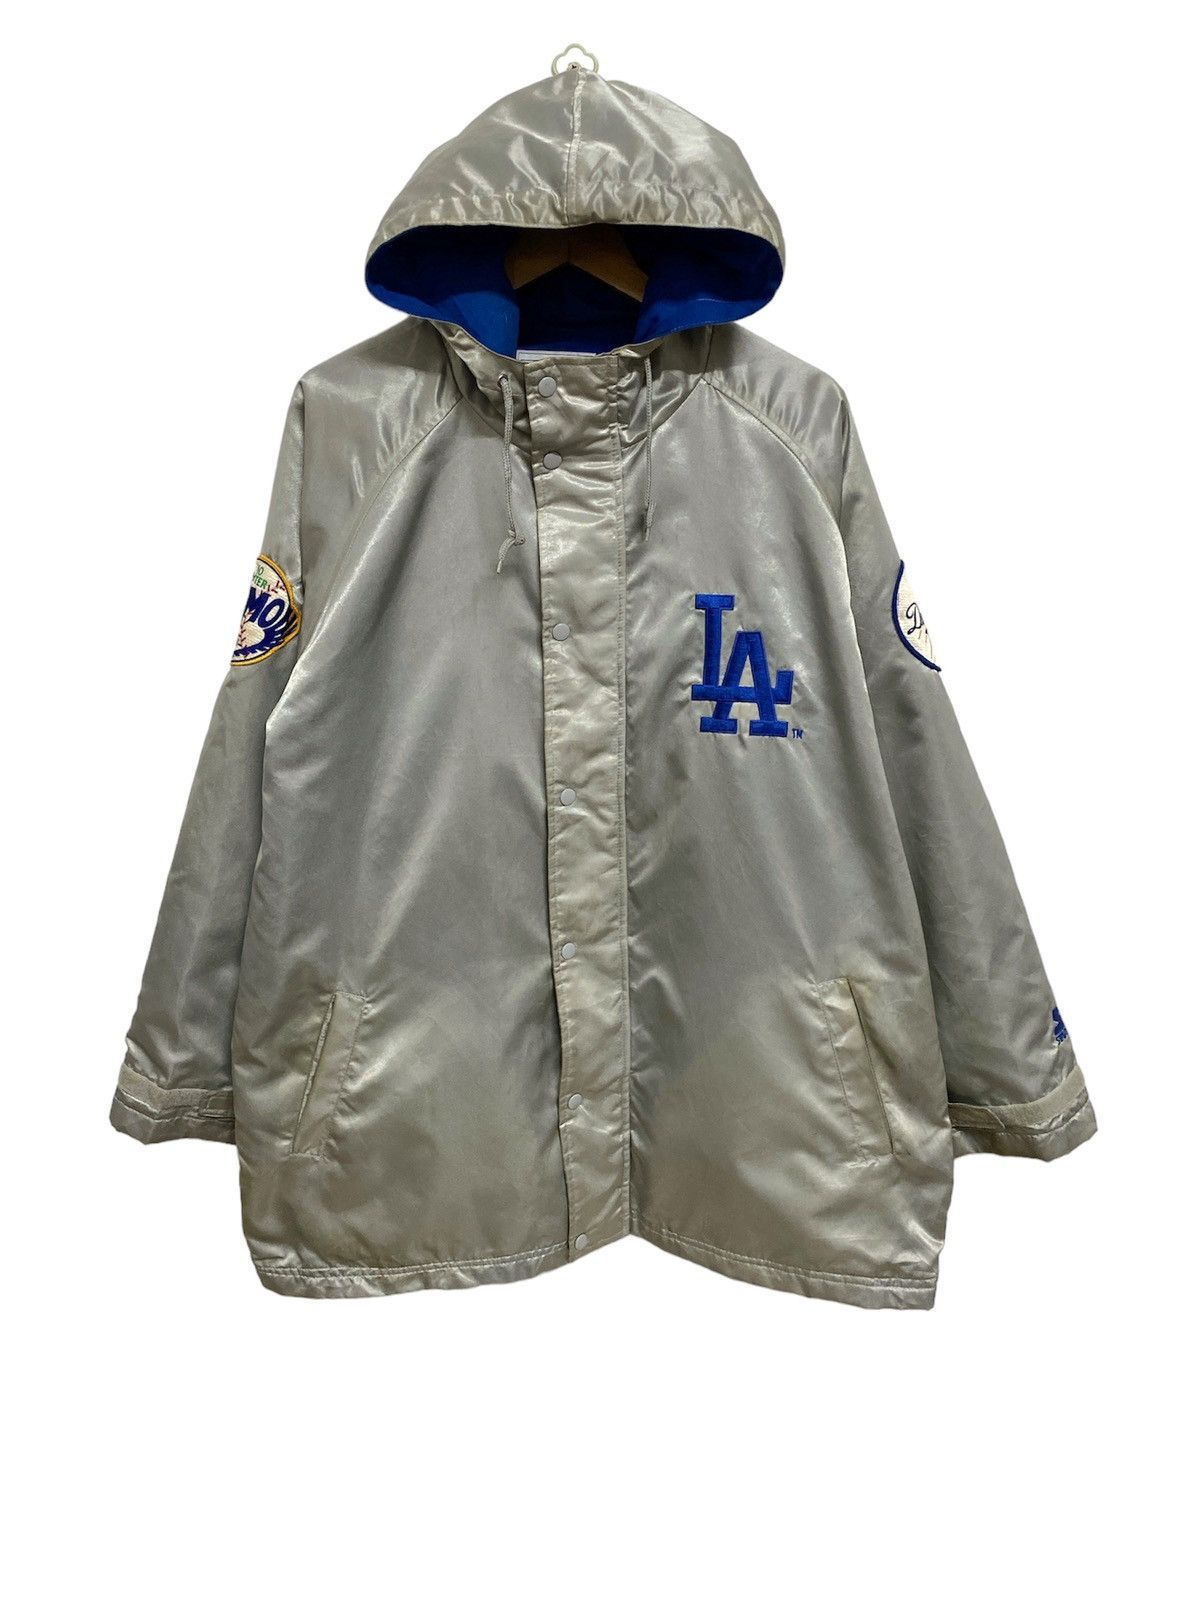 Vintage Starter Los Angeles LA Dodgers 90’s Jacket - 1